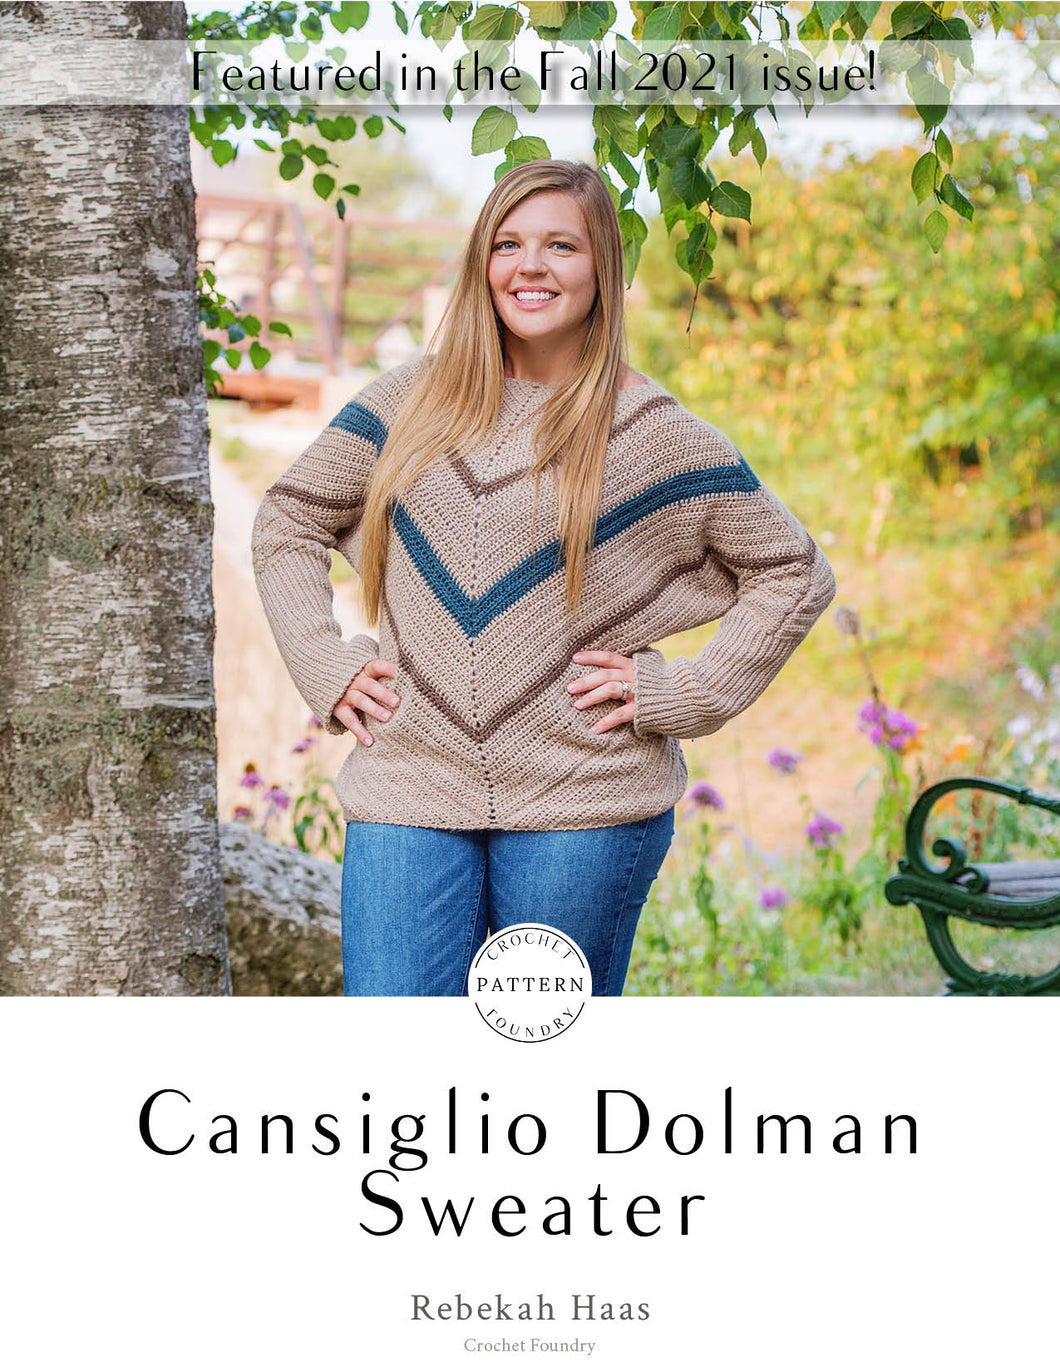 Cansiglio Dolman Sweater Crochet PDF Pattern by Rebekah Haas